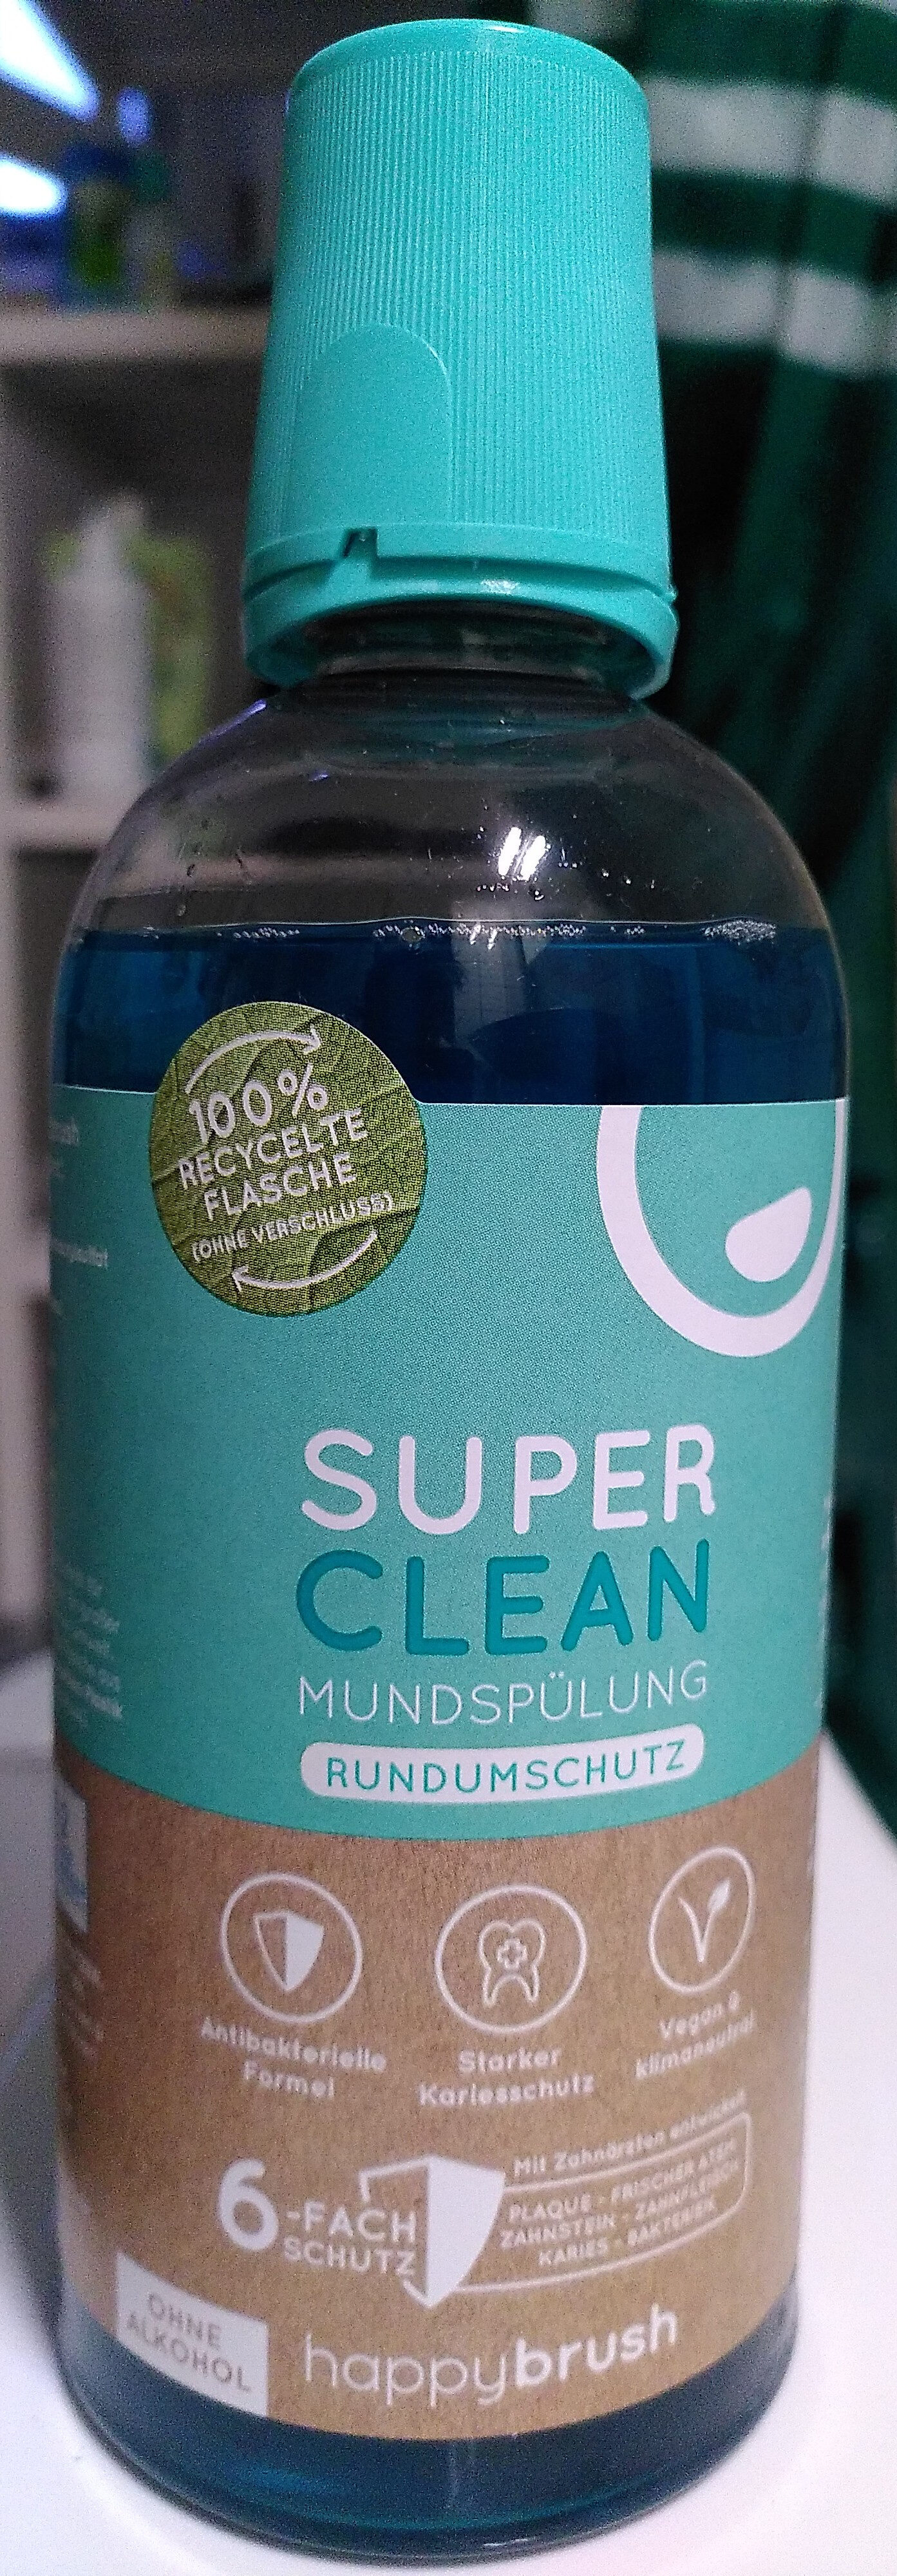 Super clean Mundspülung Rundumschutz - Product - en